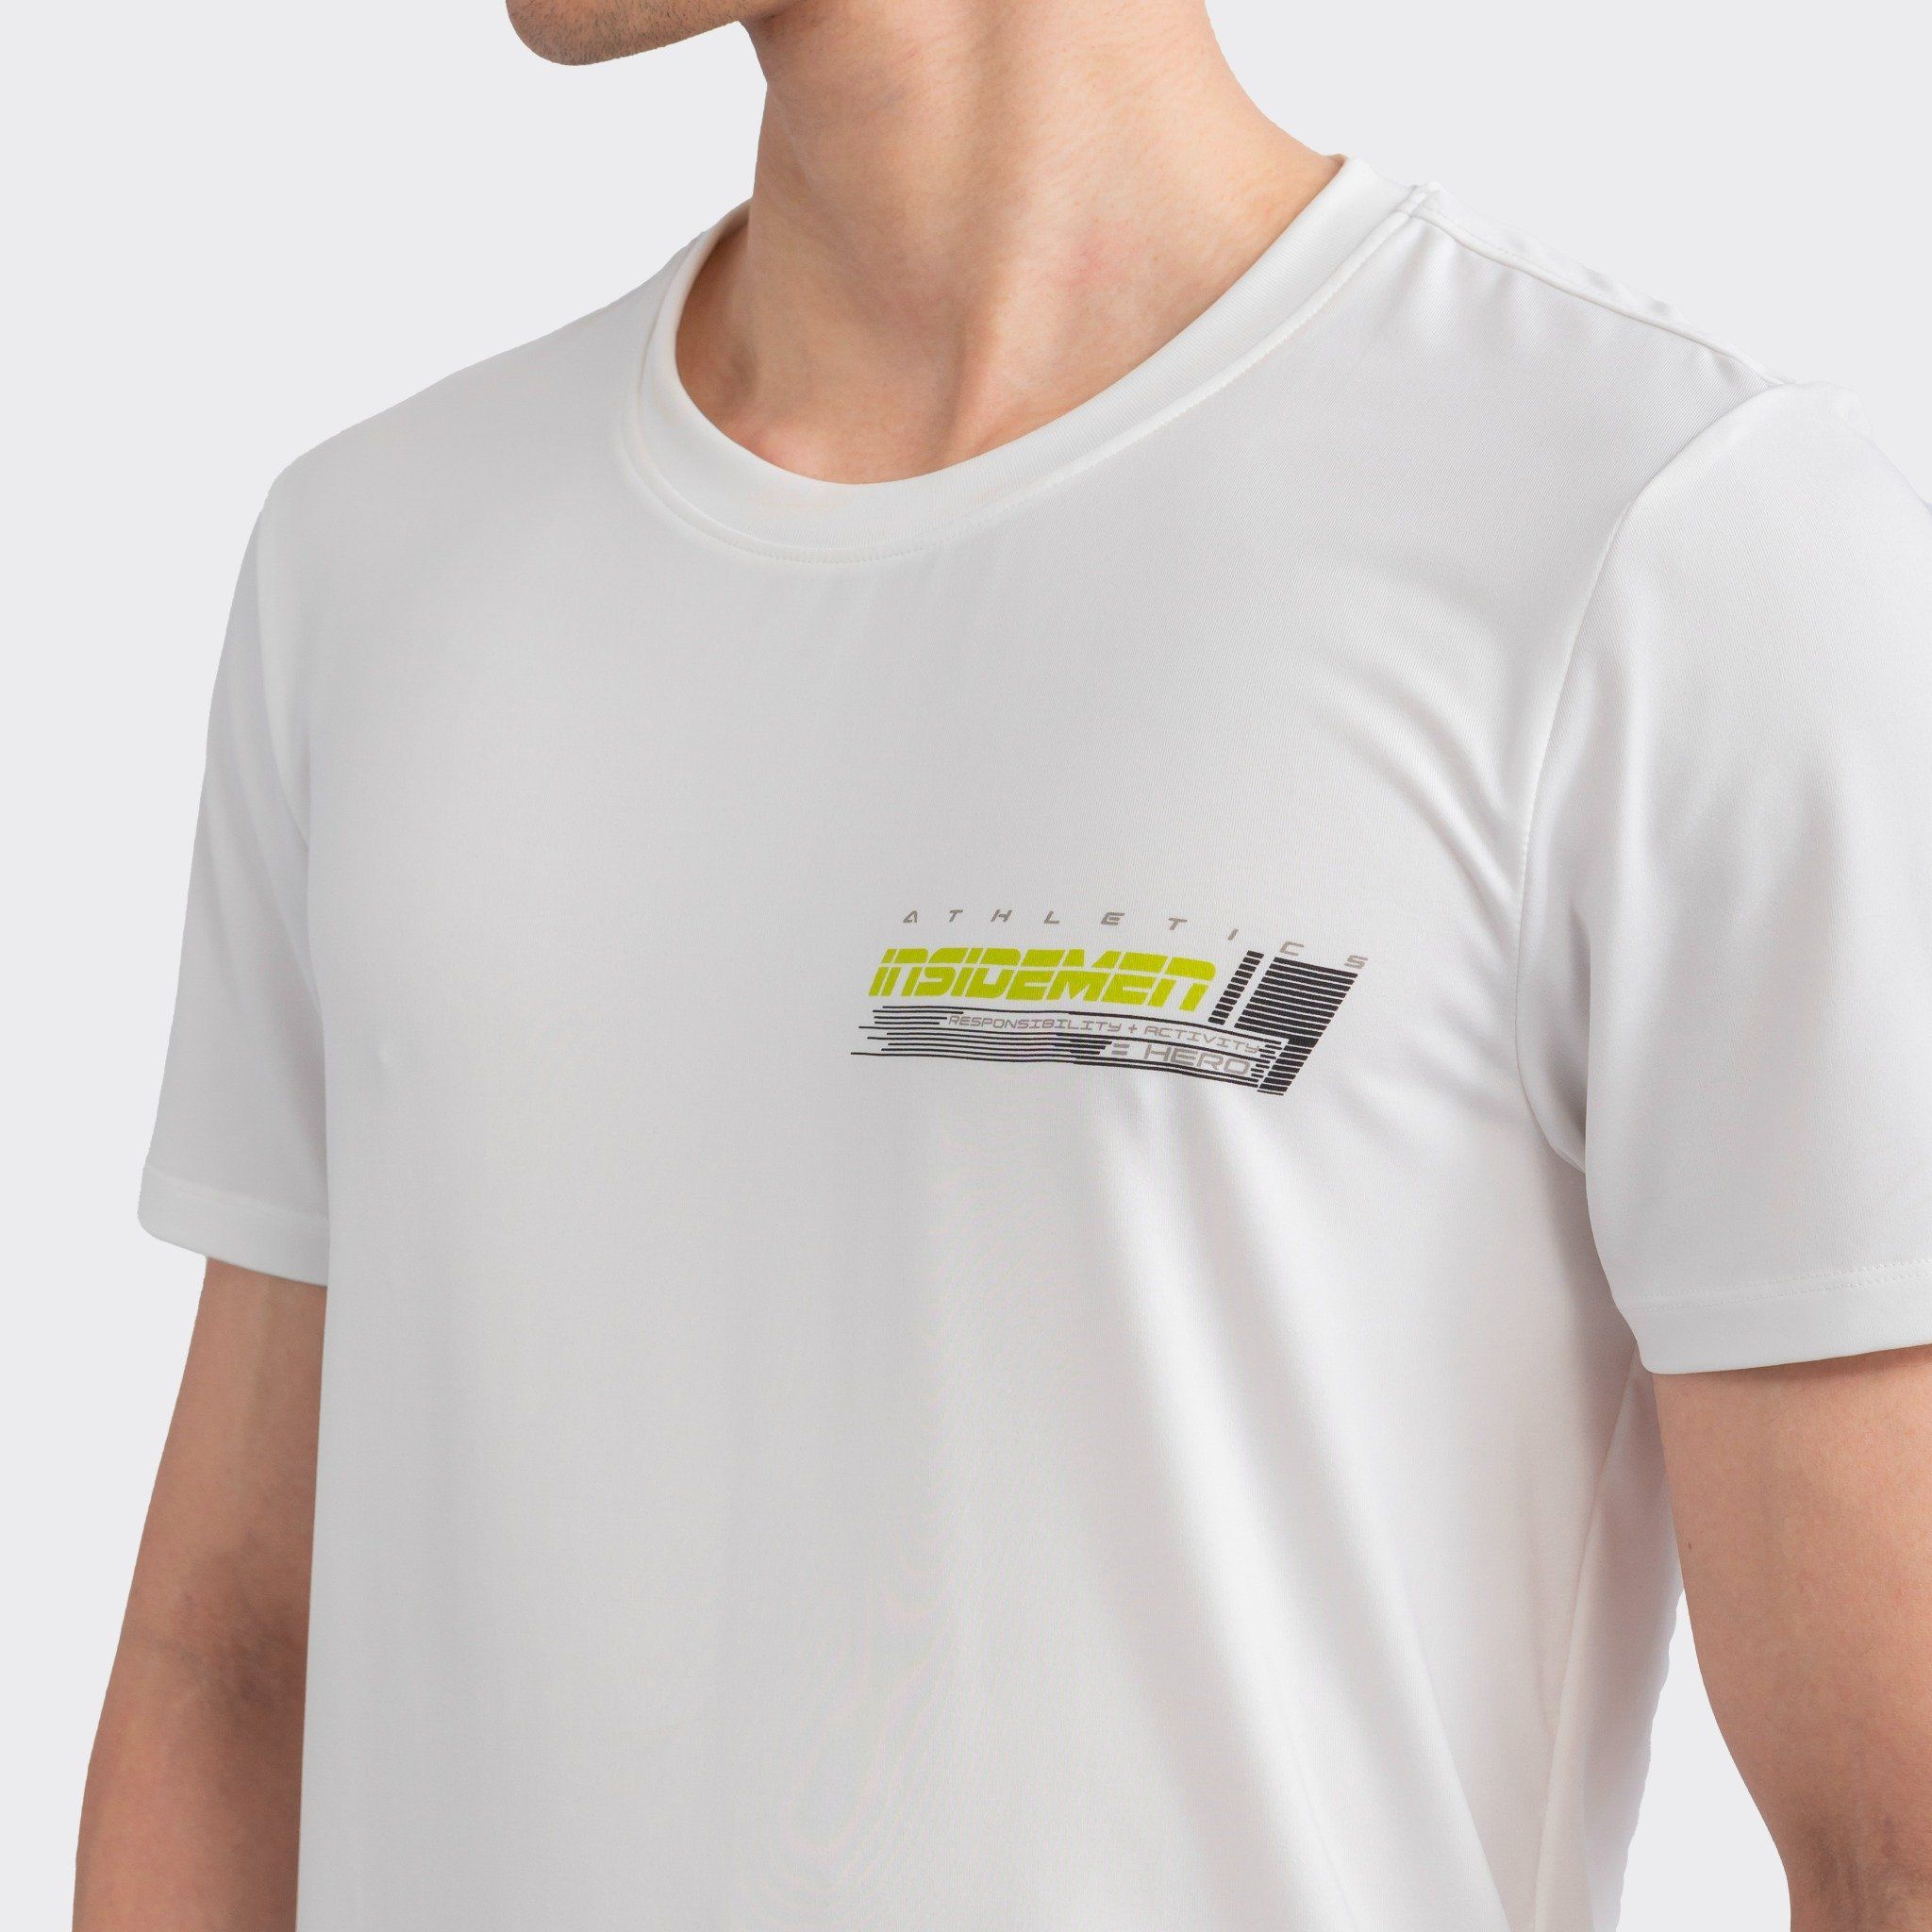  Áo T-shirt nam ngắn tay Insidemen ITS008S3 